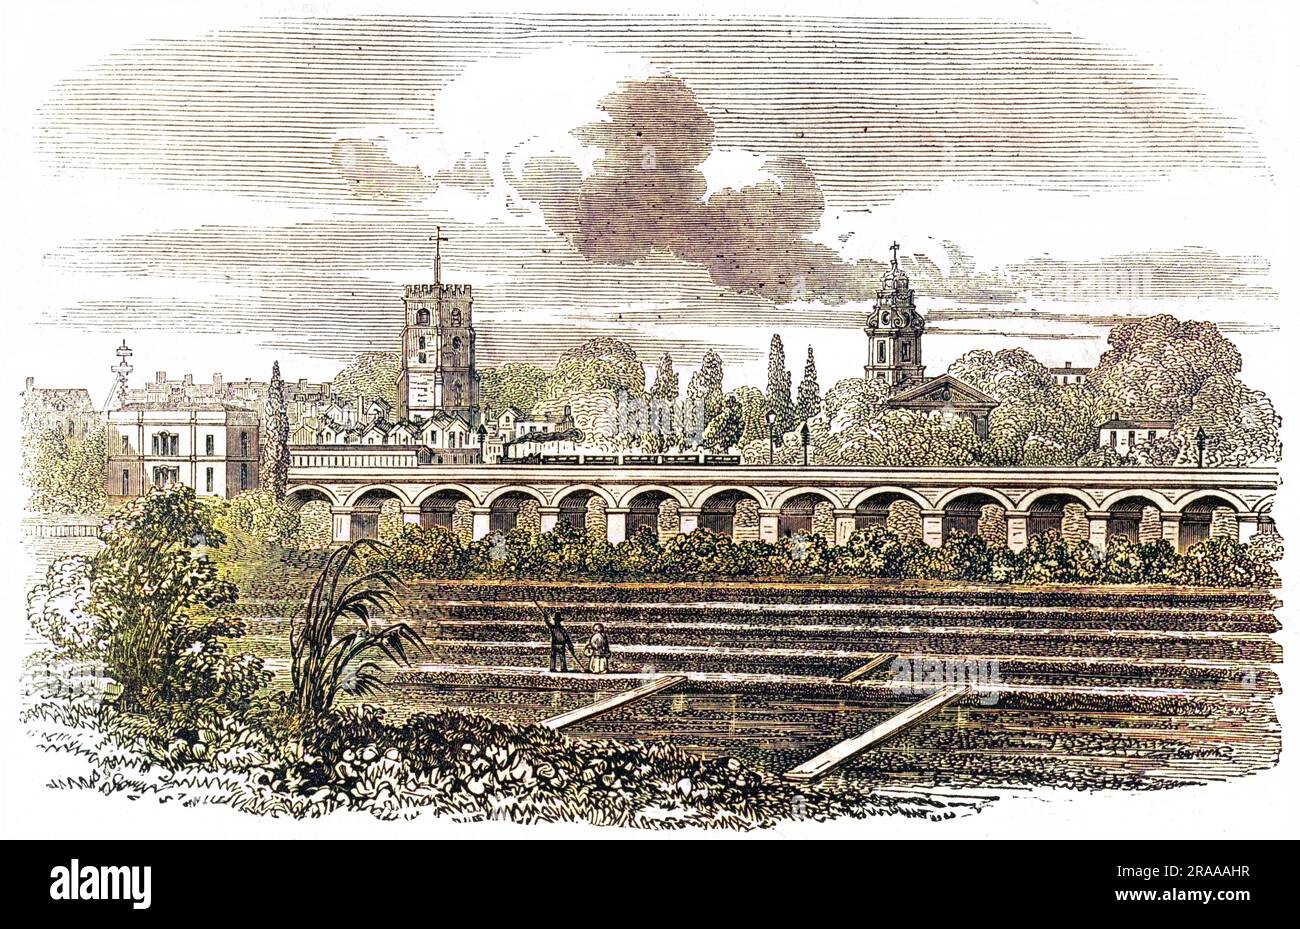 La Camden-Town Railway presso la stazione di Hackney, con una piantagione di crescione lungo il binario. Data: 1851 Foto Stock